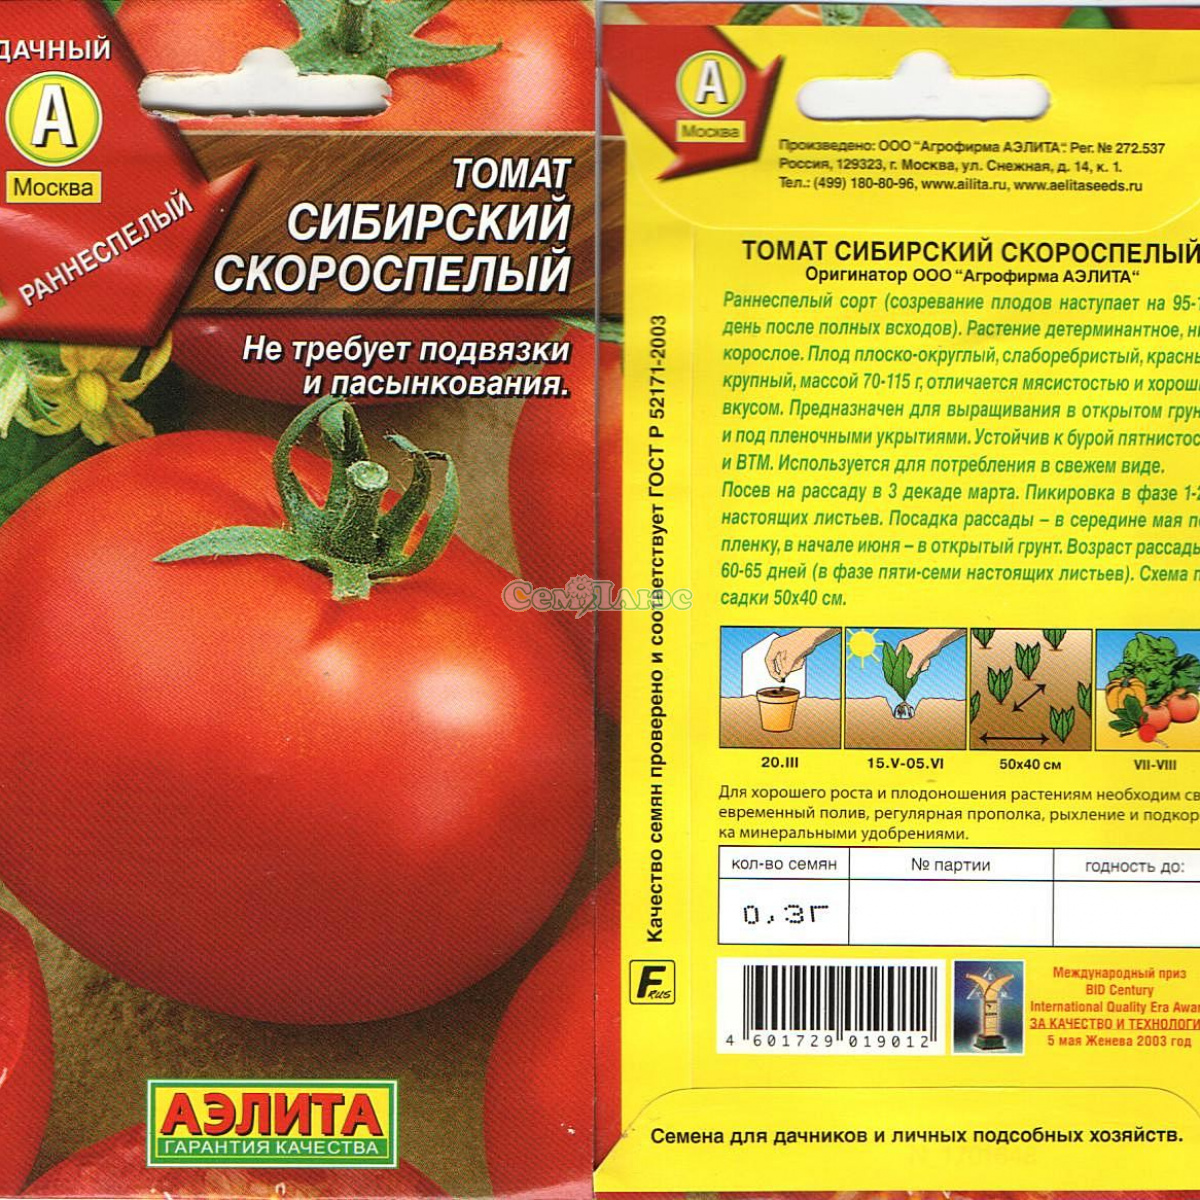 Рассада помидор — пошаговая инструкция как правильно растить рассаду томатов. описание от а до я ухода за рассадой (120 фото + видео)